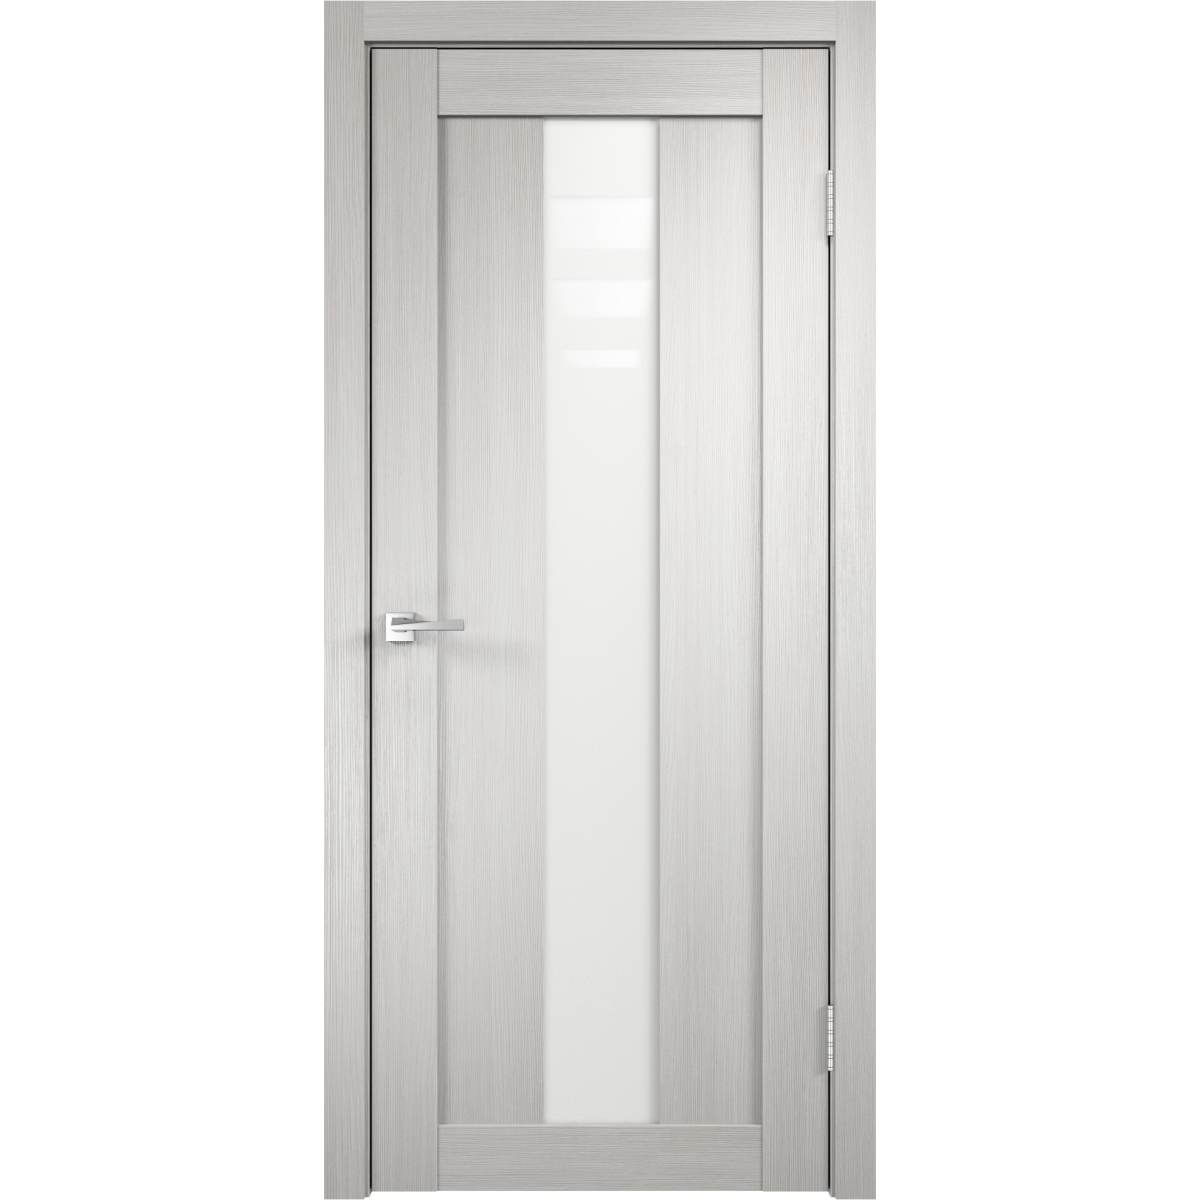 Дверь межкомнатная остеклённая Фортуна 90x200 см, ПВХ, цвет белый дуб